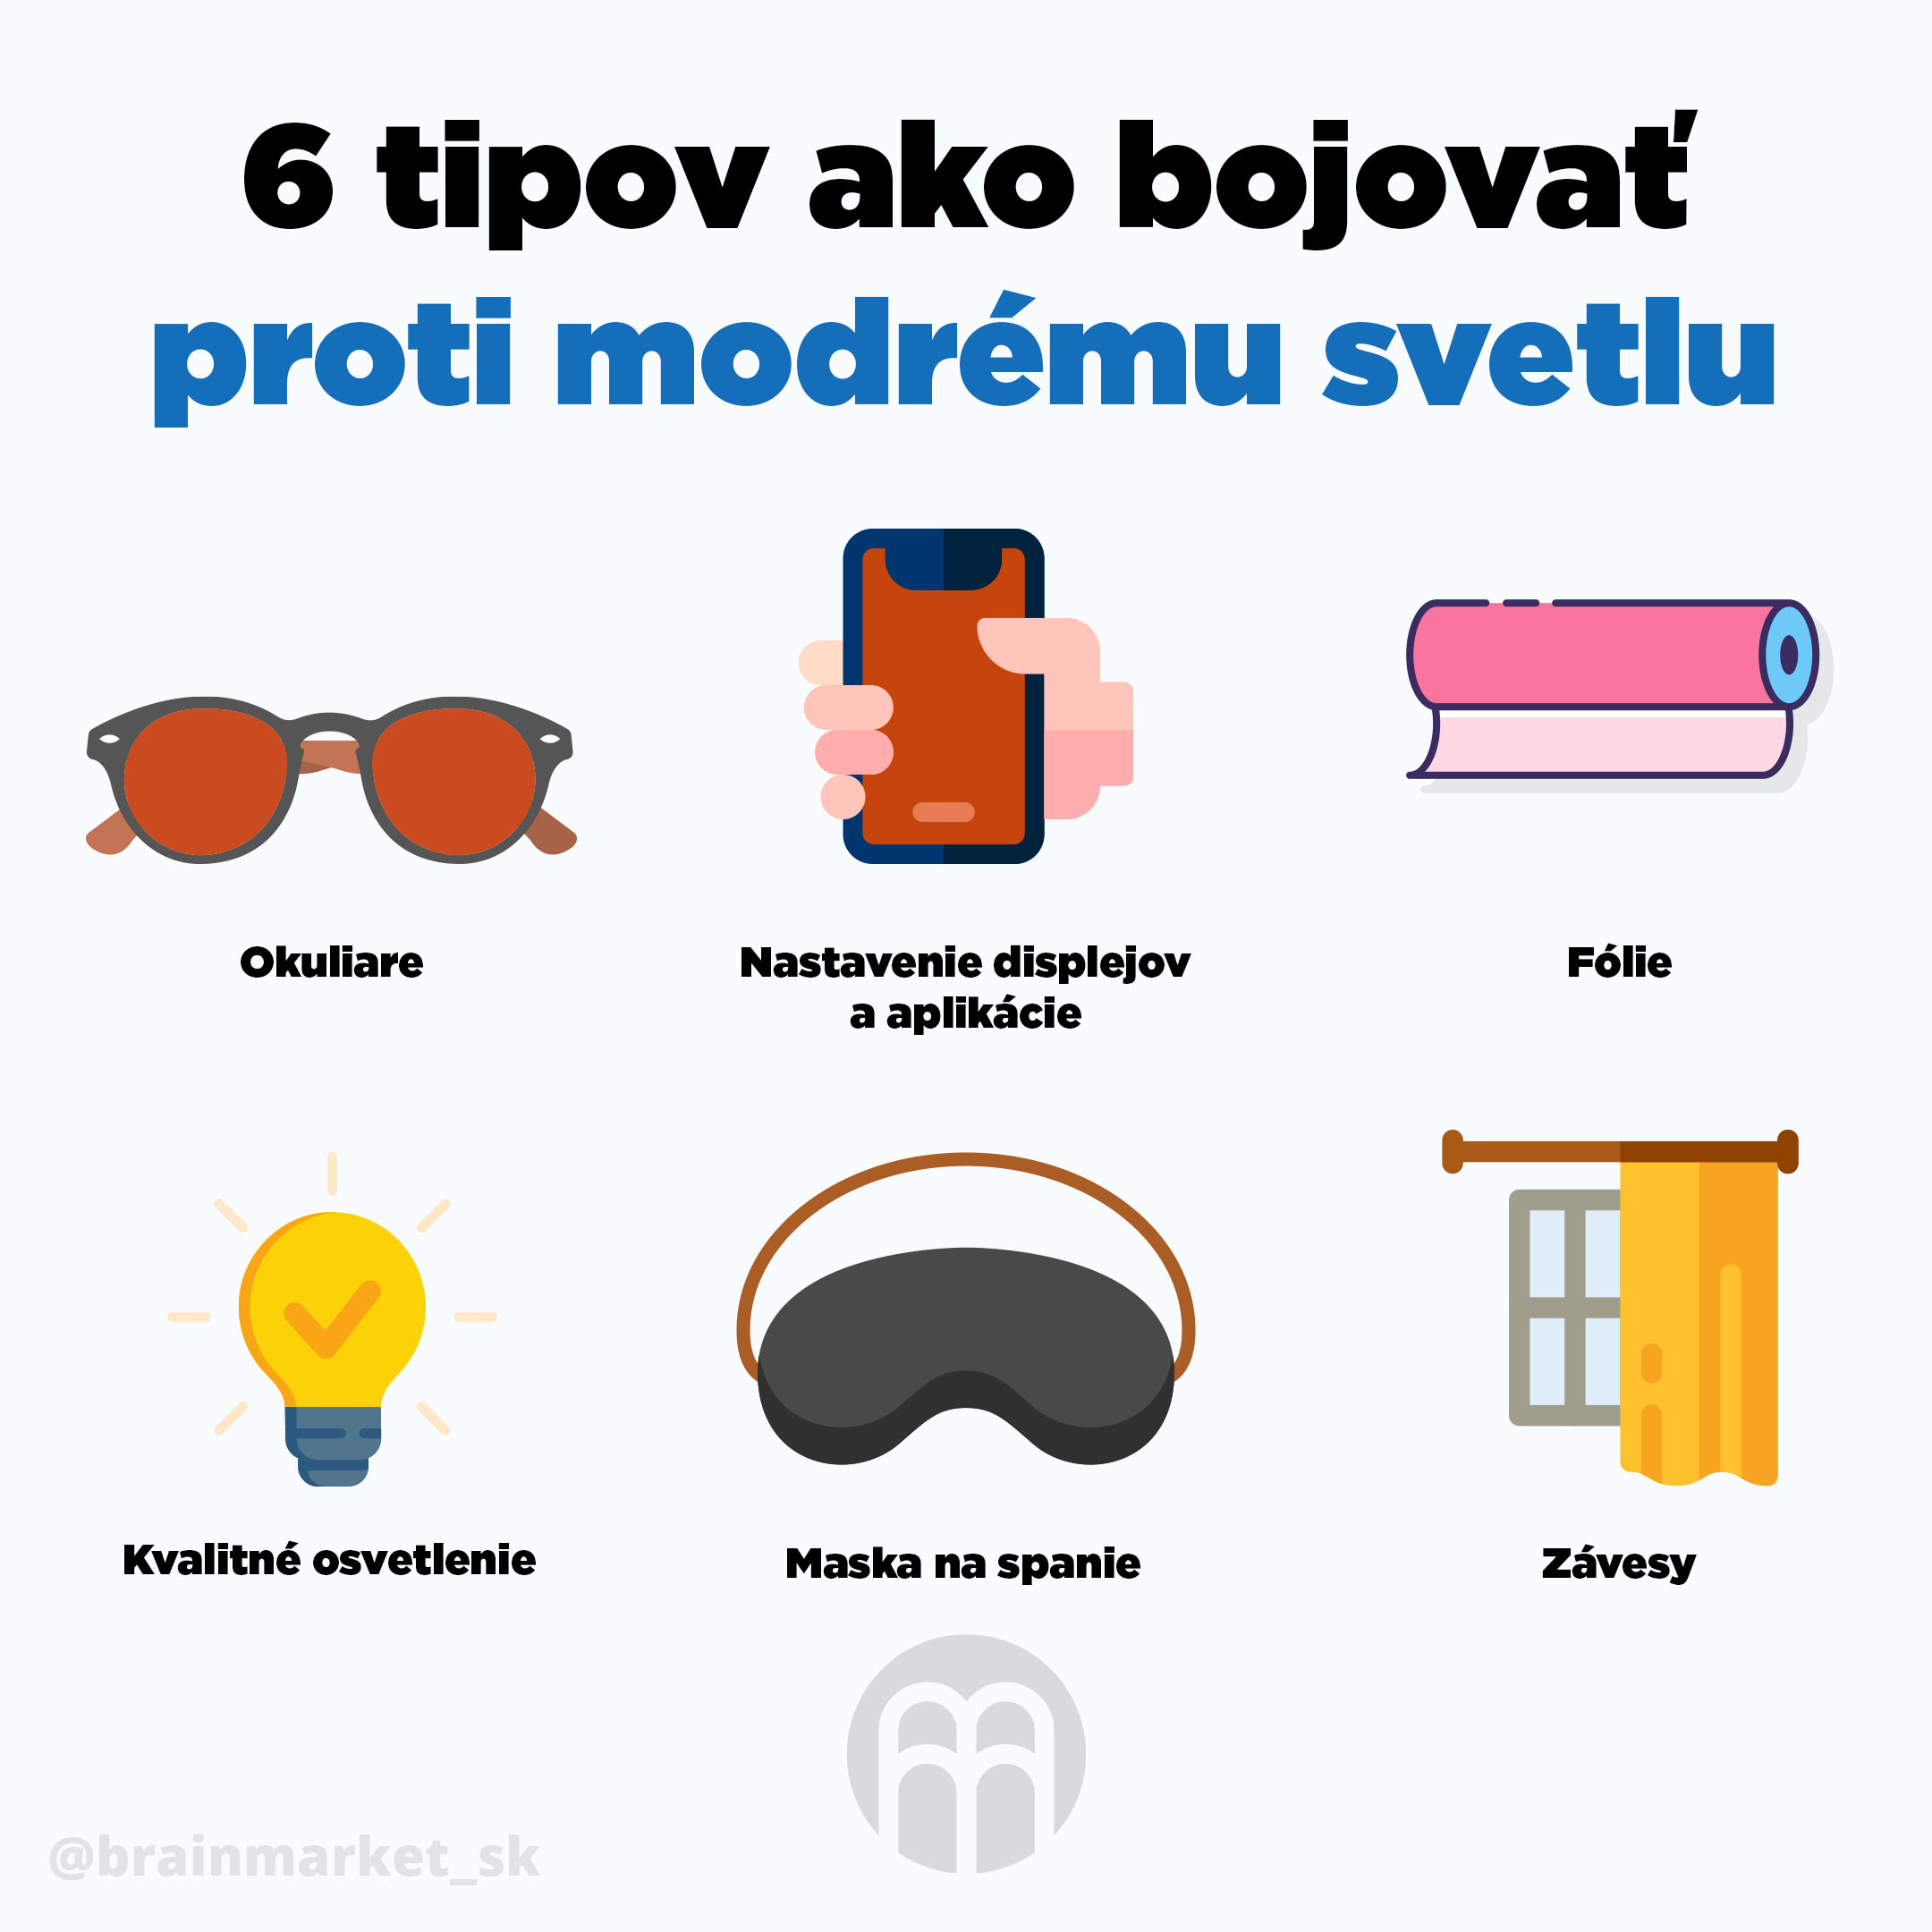 Červené okuliare - módny doplnok pre podporu zdravia